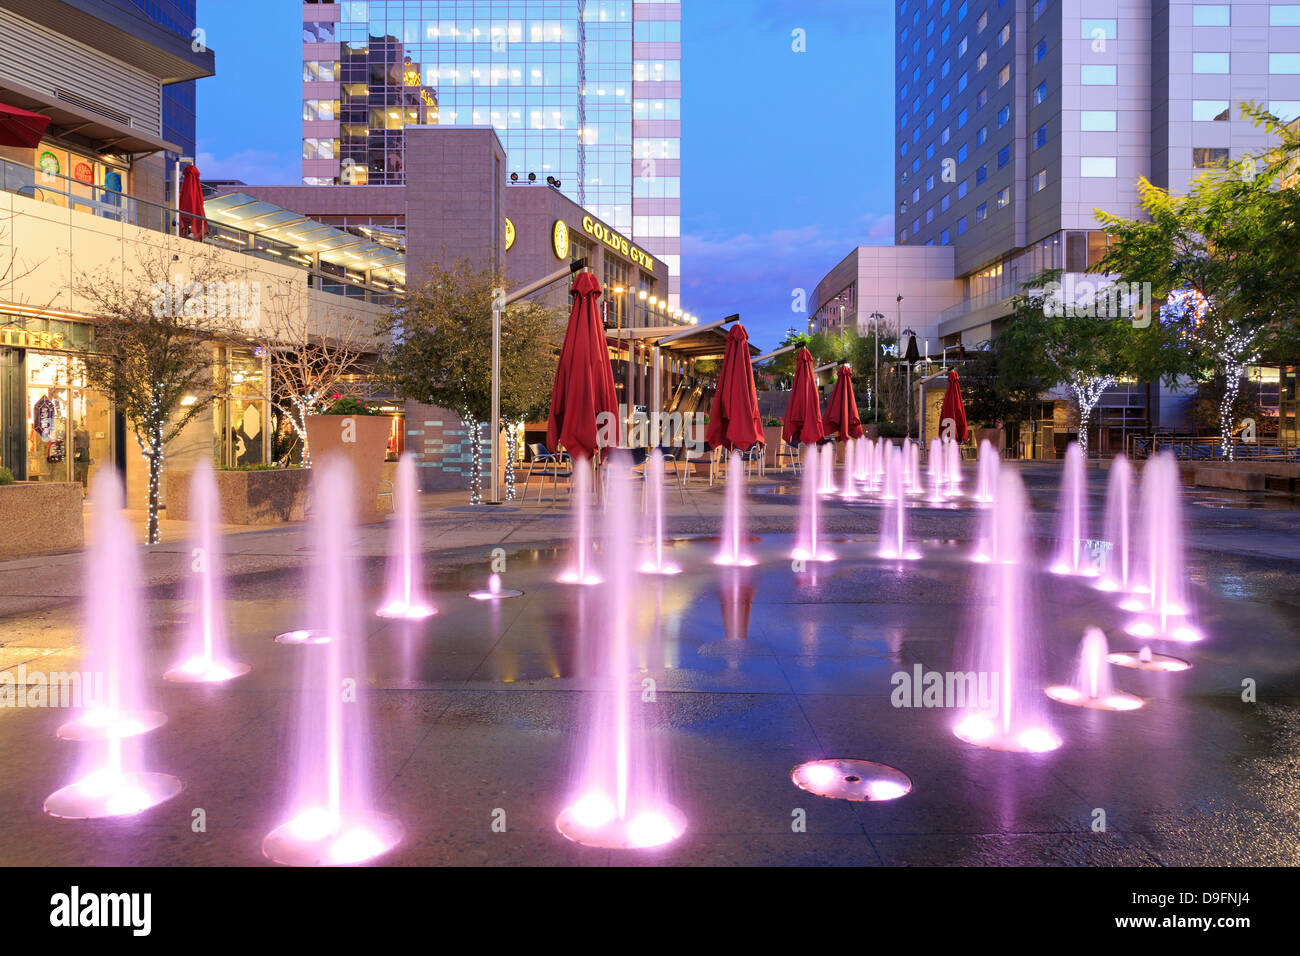 Fountain in CityScape complex, Phoenix, Arizona, USA Stock Photo